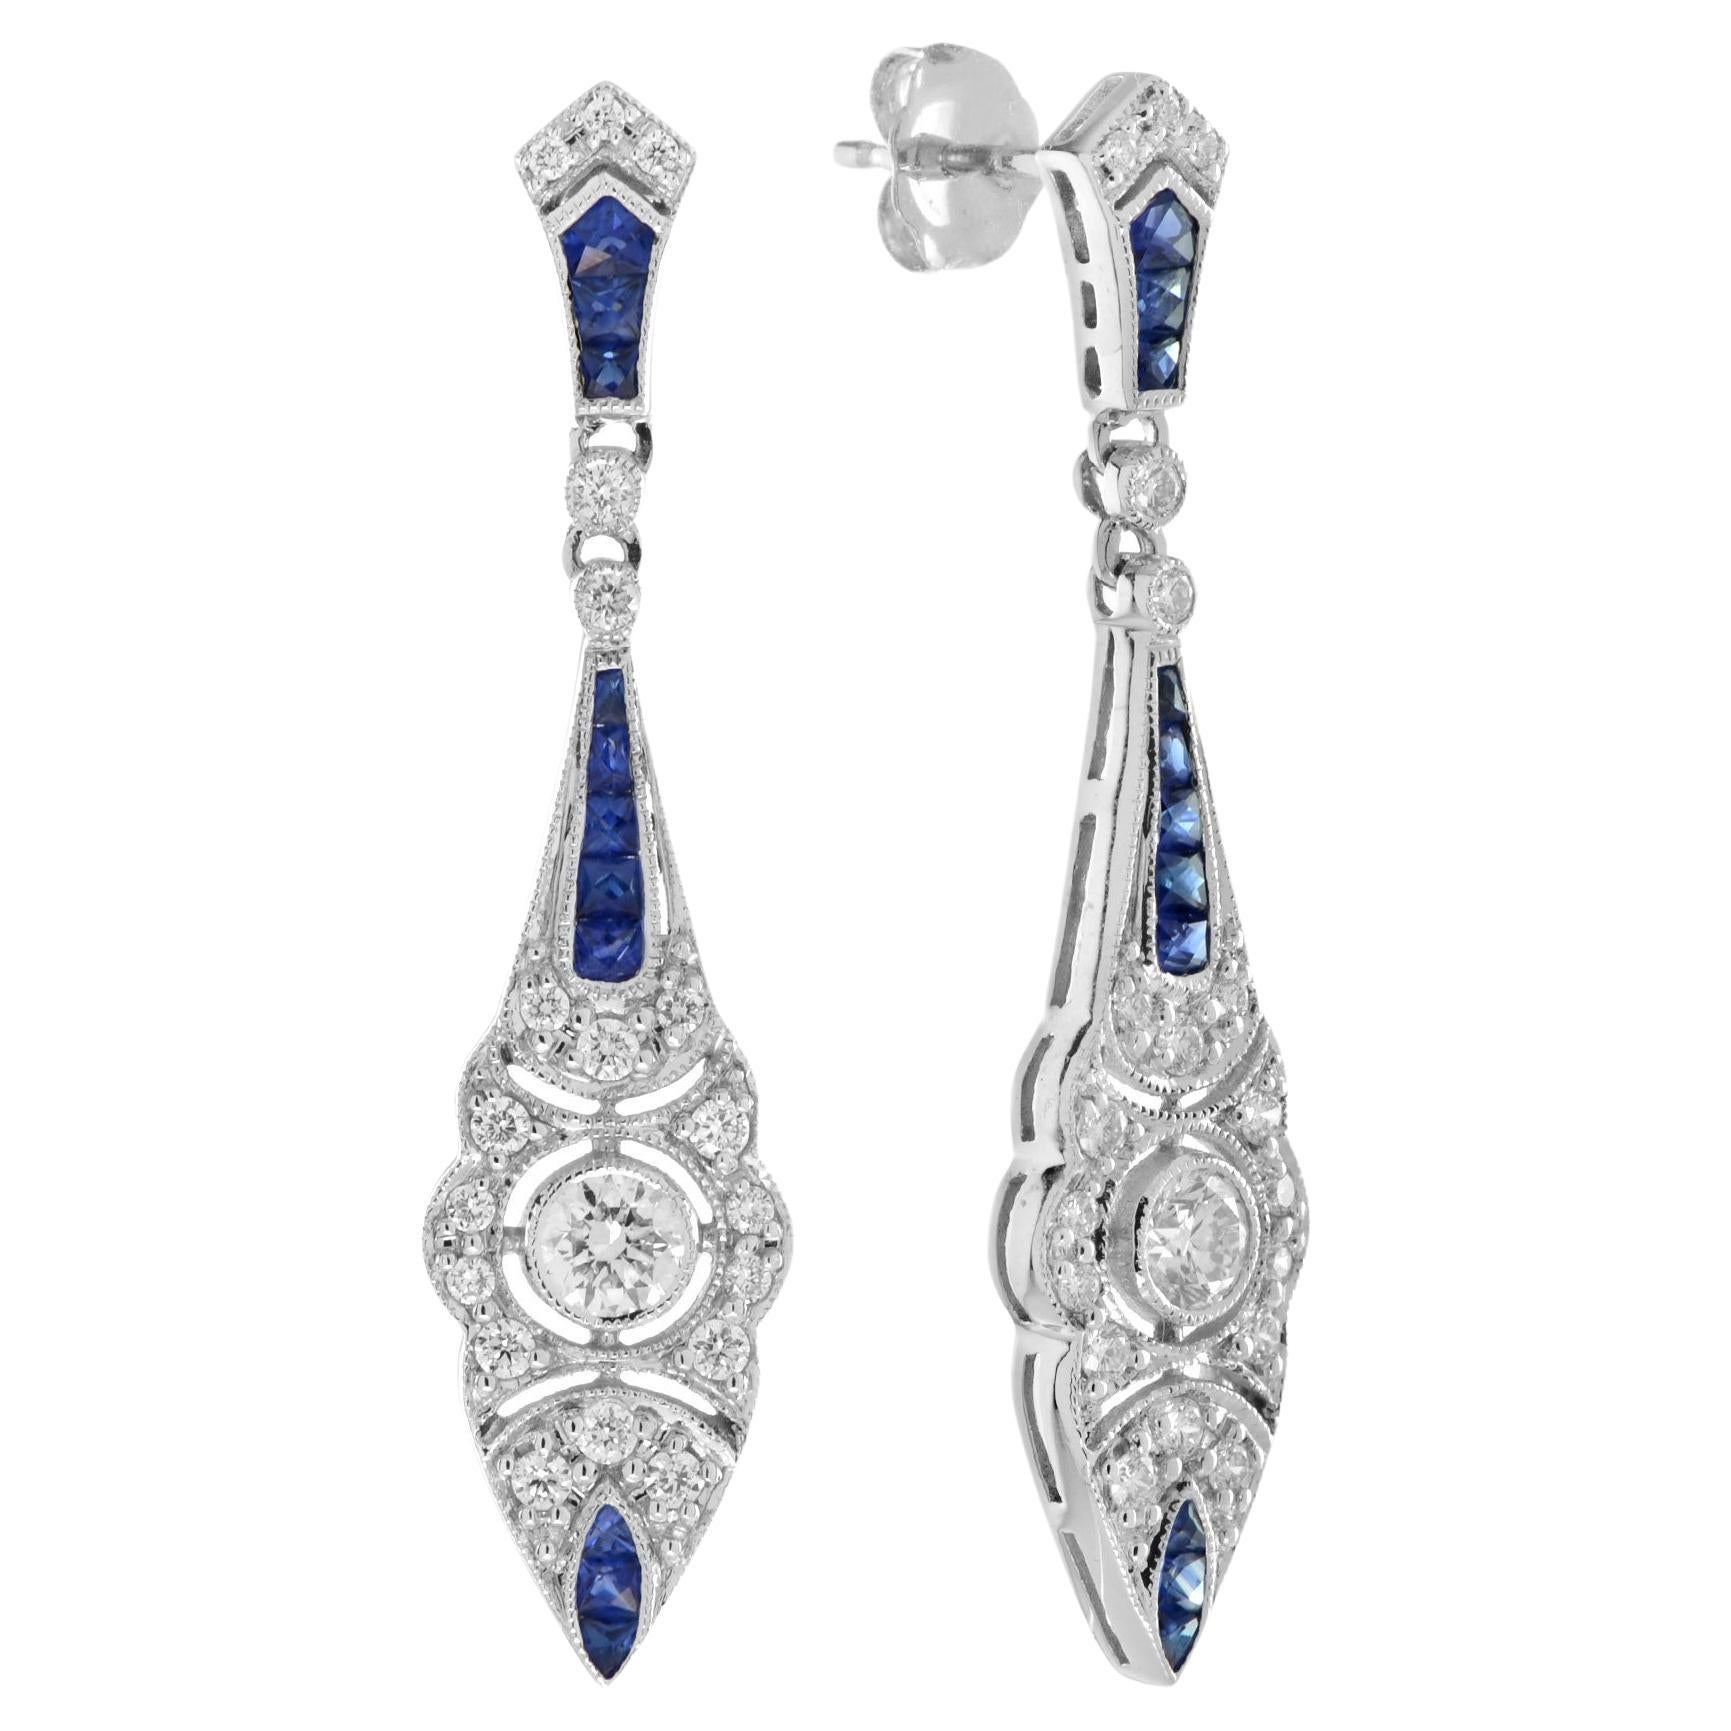 Boucles d'oreilles pendantes de style Art déco en or blanc 18 carats avec diamants et saphirs